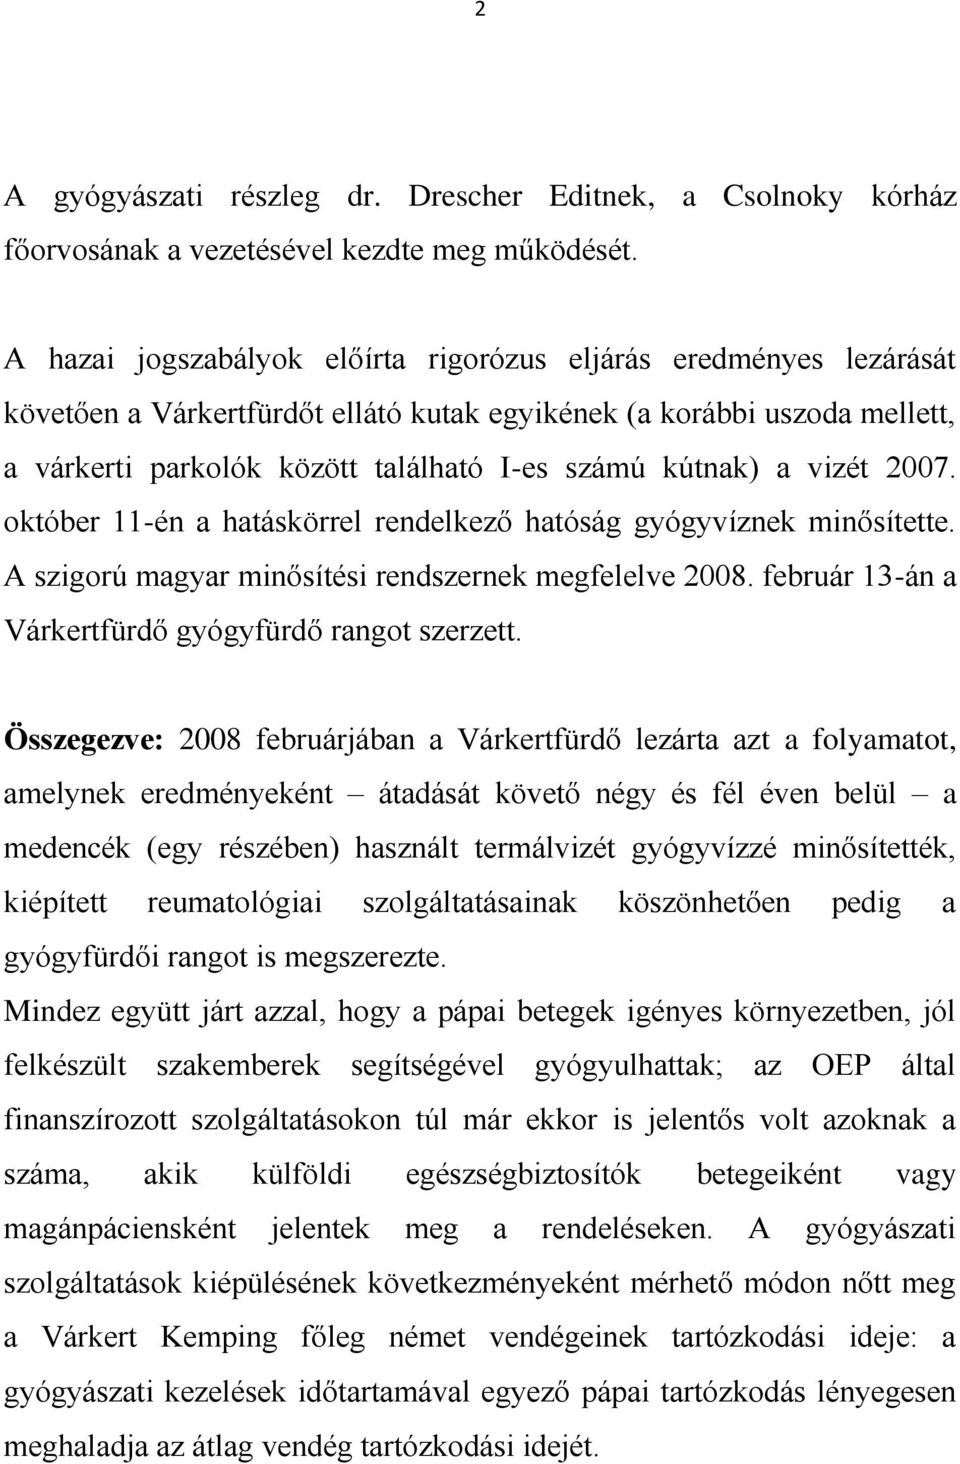 a vizét 2007. október 11-én a hatáskörrel rendelkező hatóság gyógyvíznek minősítette. A szigorú magyar minősítési rendszernek megfelelve 2008. február 13-án a Várkertfürdő gyógyfürdő rangot szerzett.